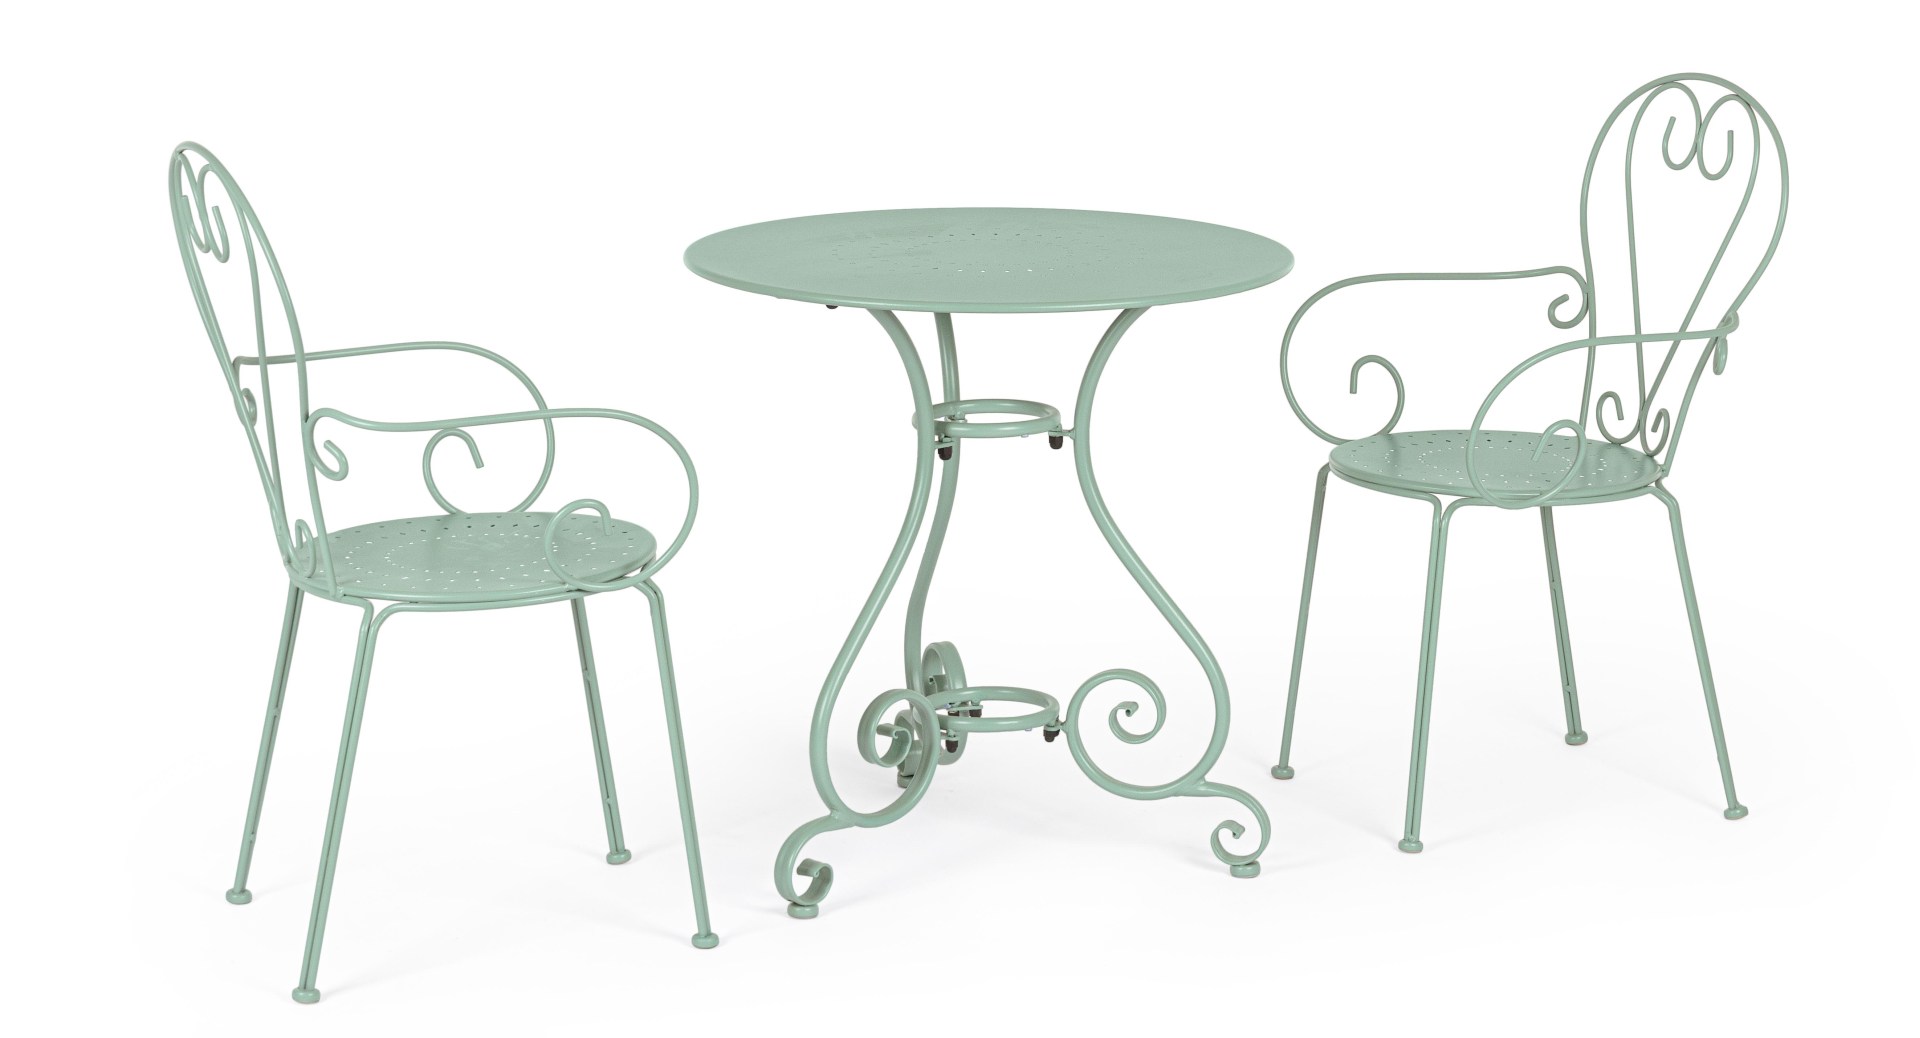 Der Gartentisch Etienne überzeugt mit seinem klassischen Design. Gefertigt wurde er aus Aluminium, welches einen grünen Farbton besitzt. Das Gestell ist aus auch Aluminium und hat eine grüne Farbe. Der Tisch verfügt über einen Durchmesser von 70 cm und is